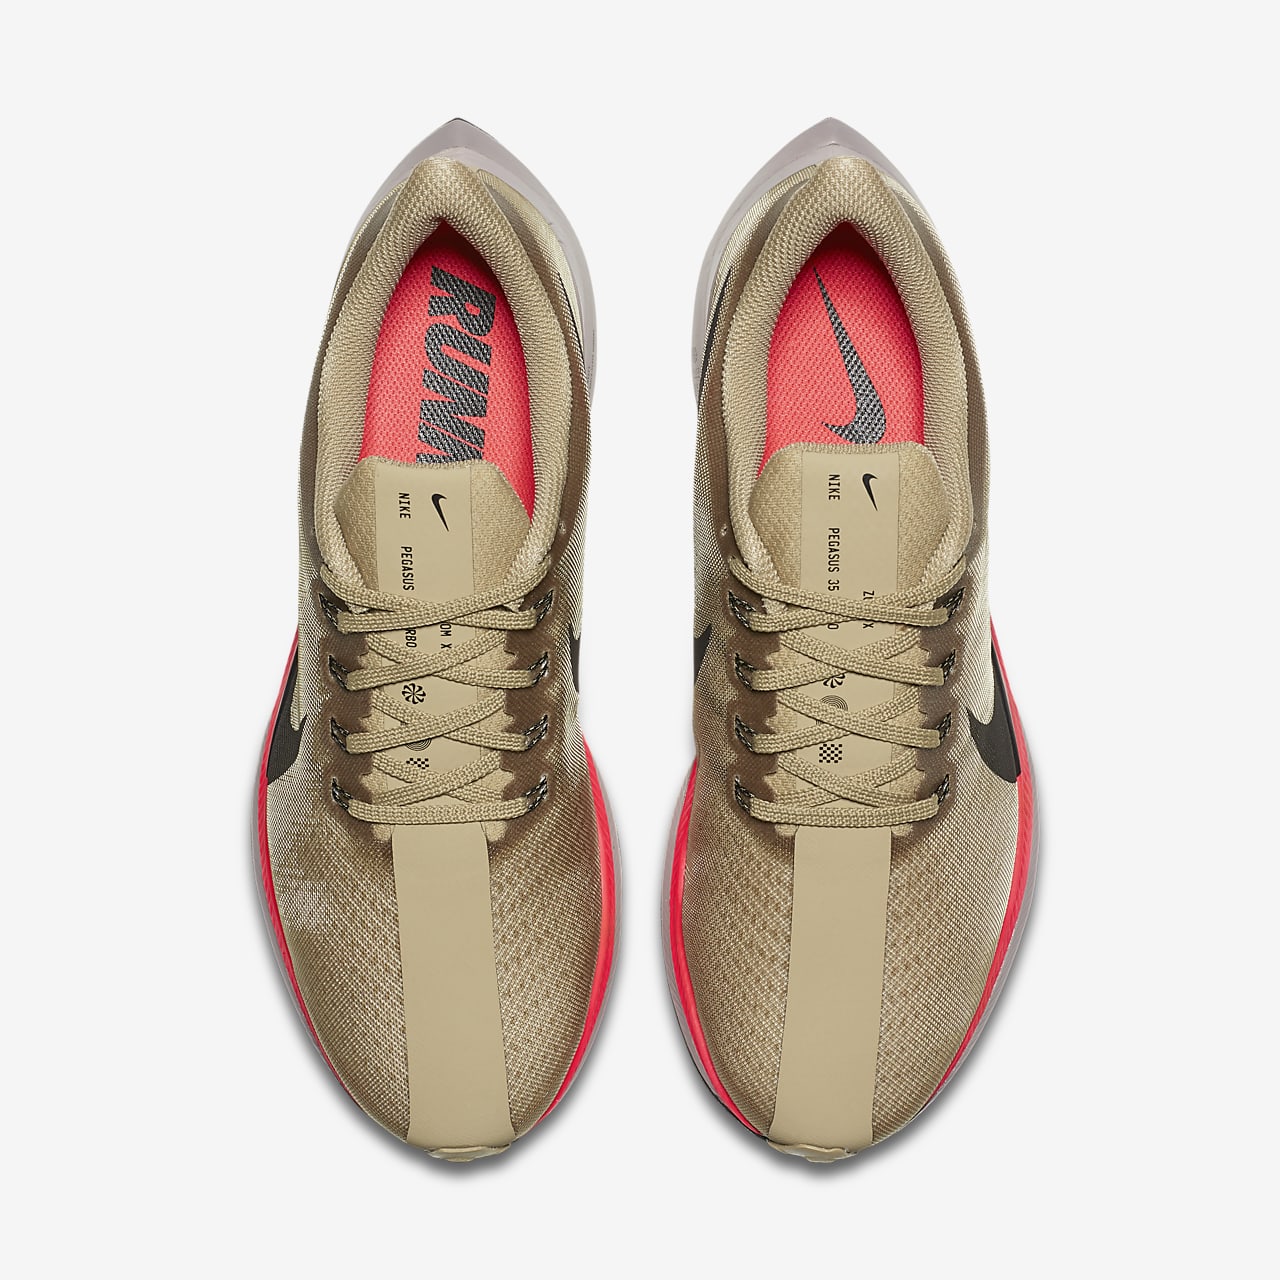 Nike Zoom Pegasus 35 Turbo Men's Running Shoe